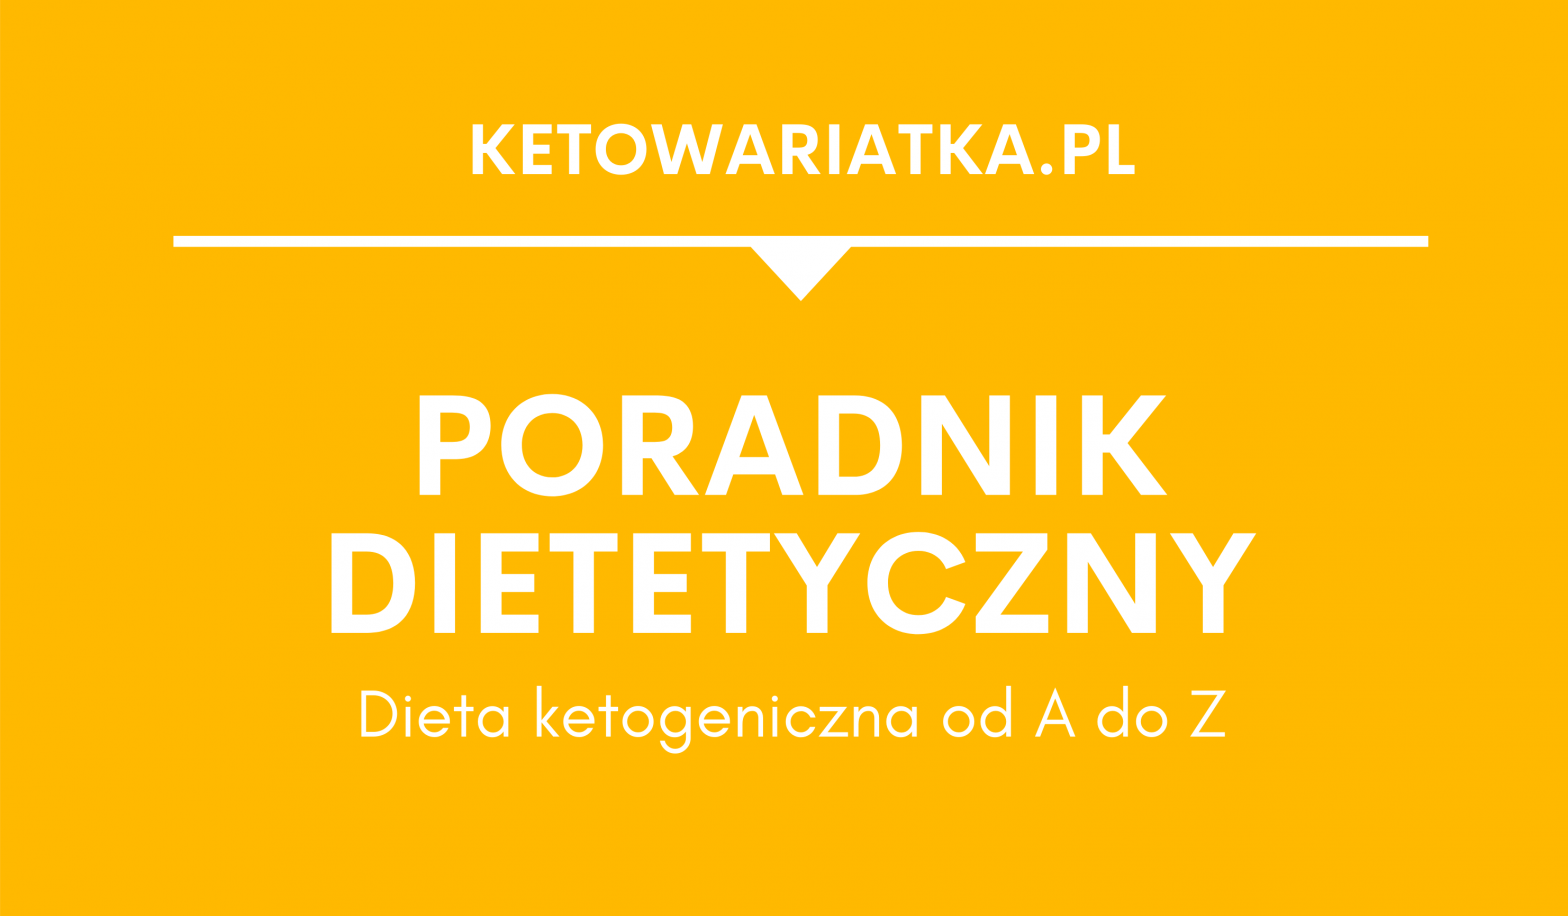 Poradnik dietetyczny: Dieta ketogeniczna od A do Z